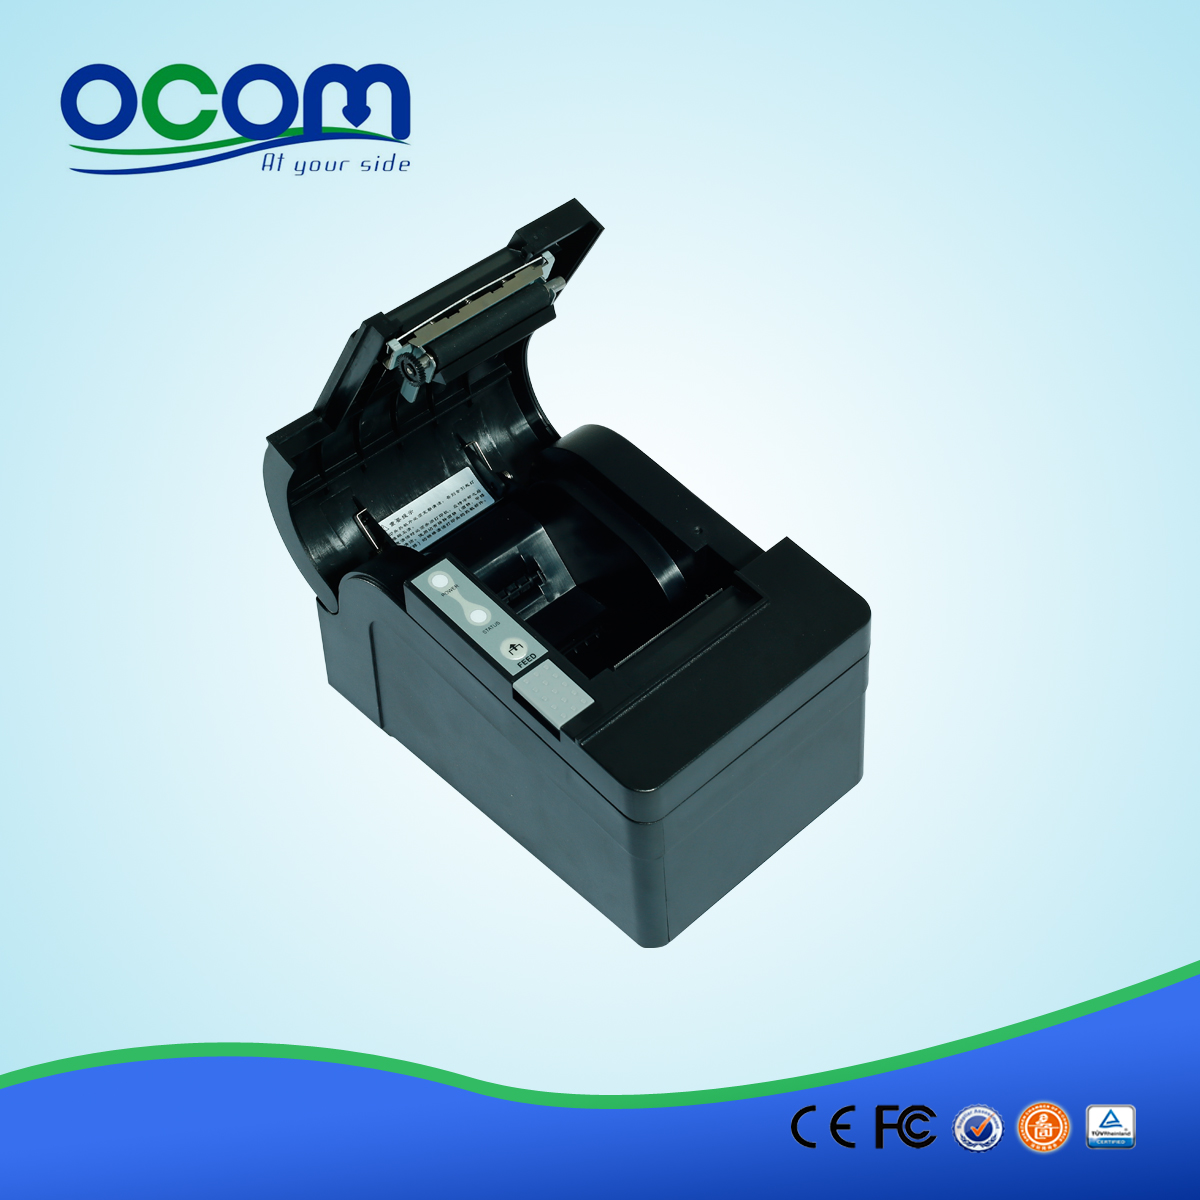 58 χιλιοστά android auto cutter θερμική παραλαβή printer-- OCPP-58C